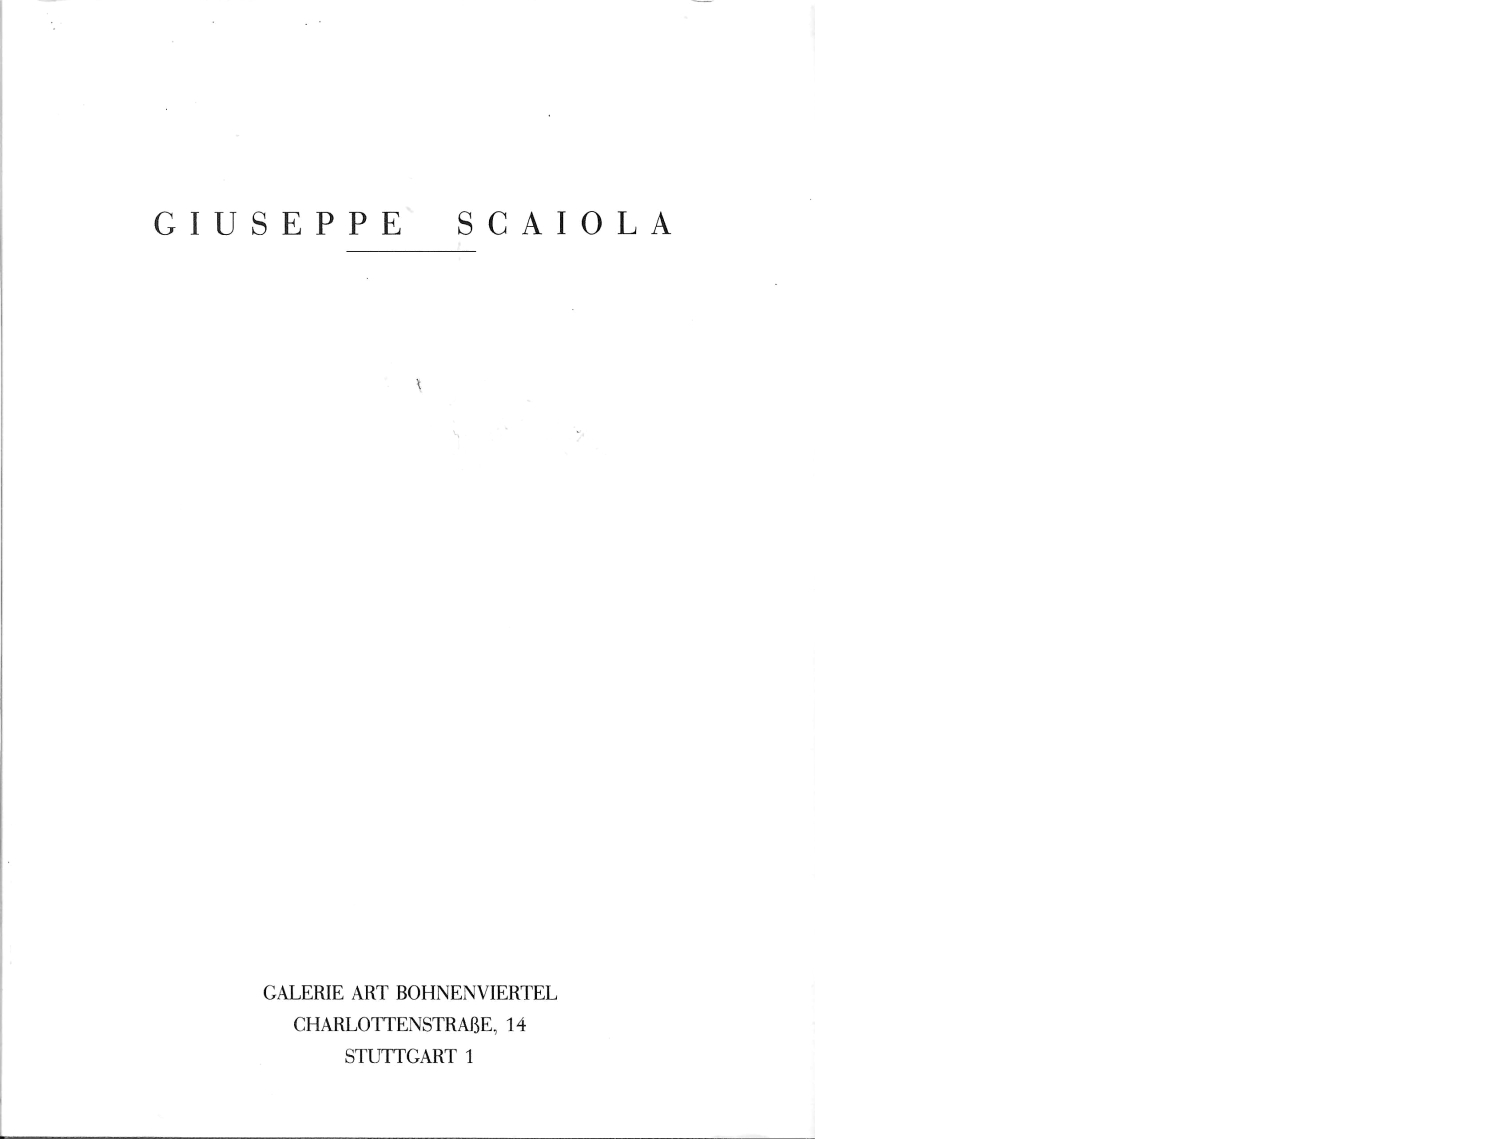 Giuseppe-Scaiola-Katalog_Umschlag